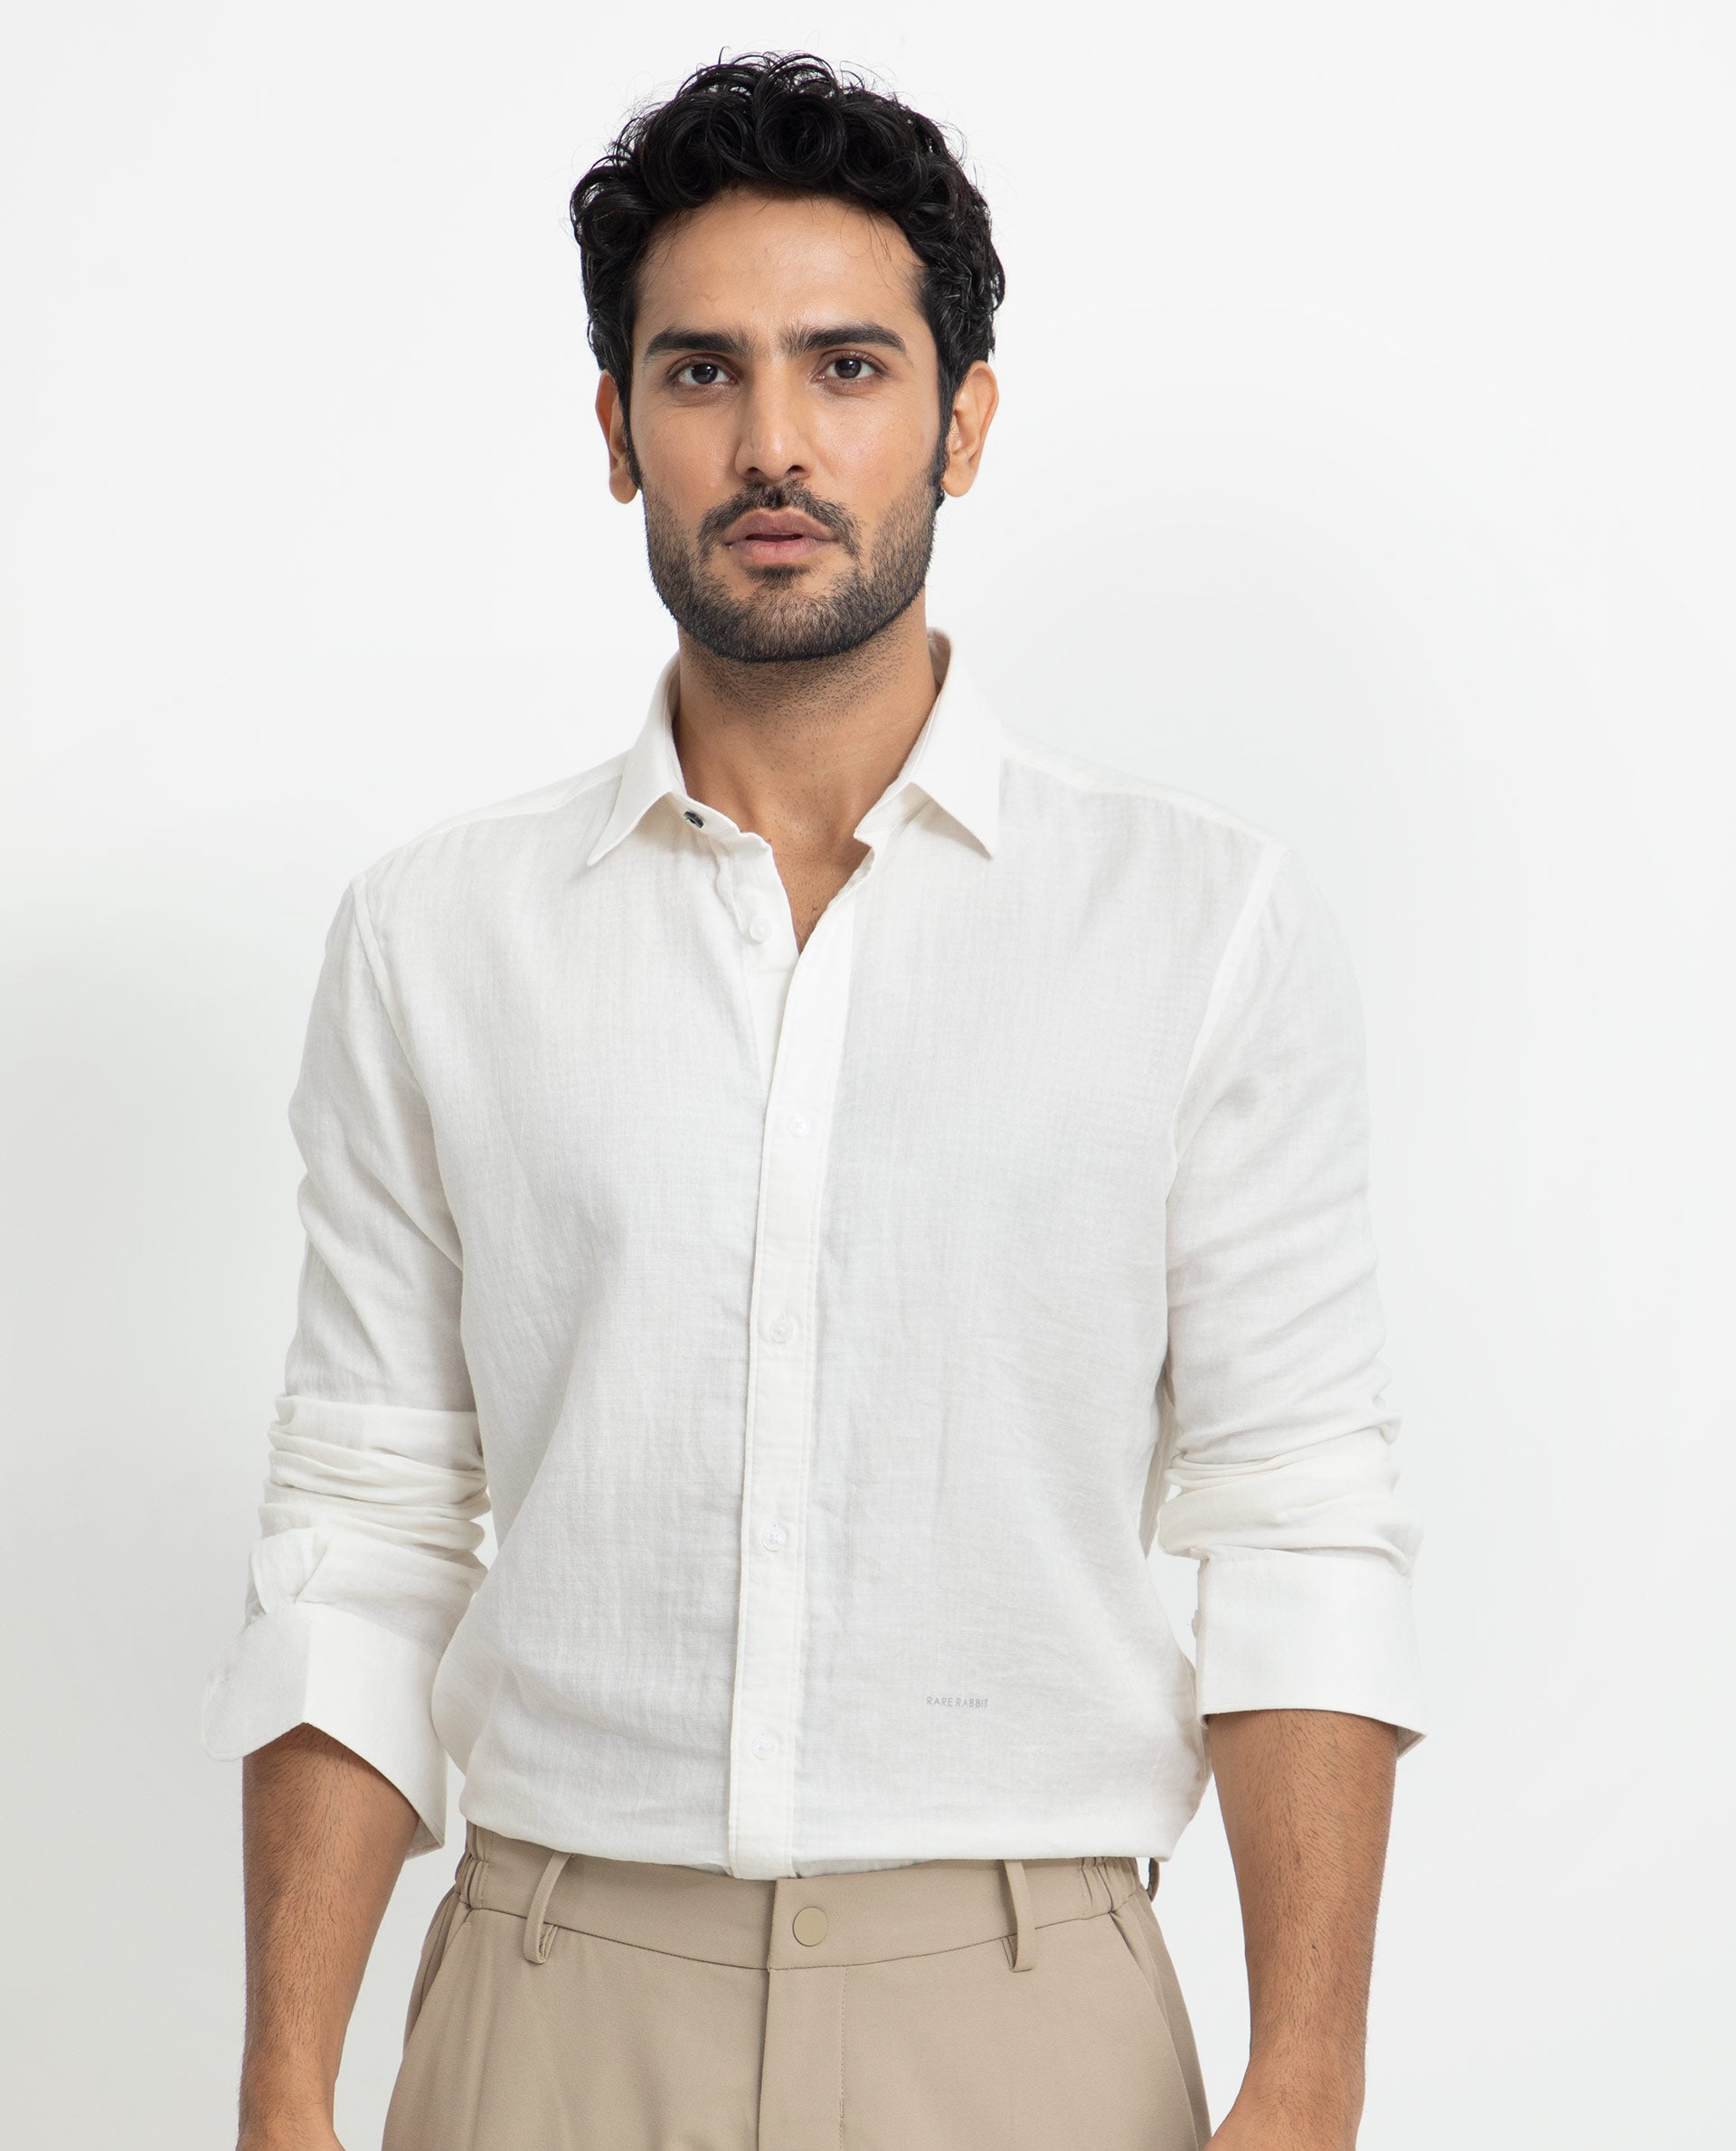 Buy St. Lucia T-Shirt Dress - Khaki White & Co. for Sale Online